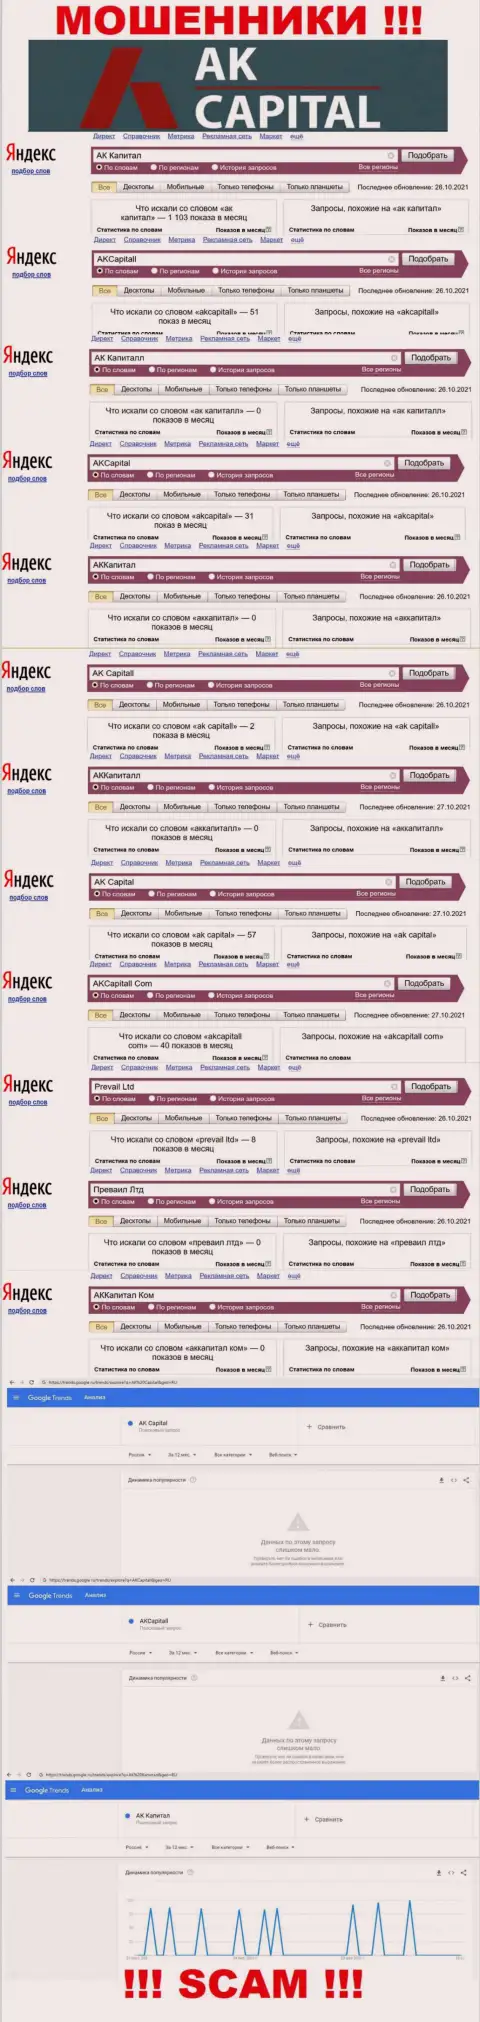 Число online запросов пользователями internet сети информации об махинаторах AK Capitall